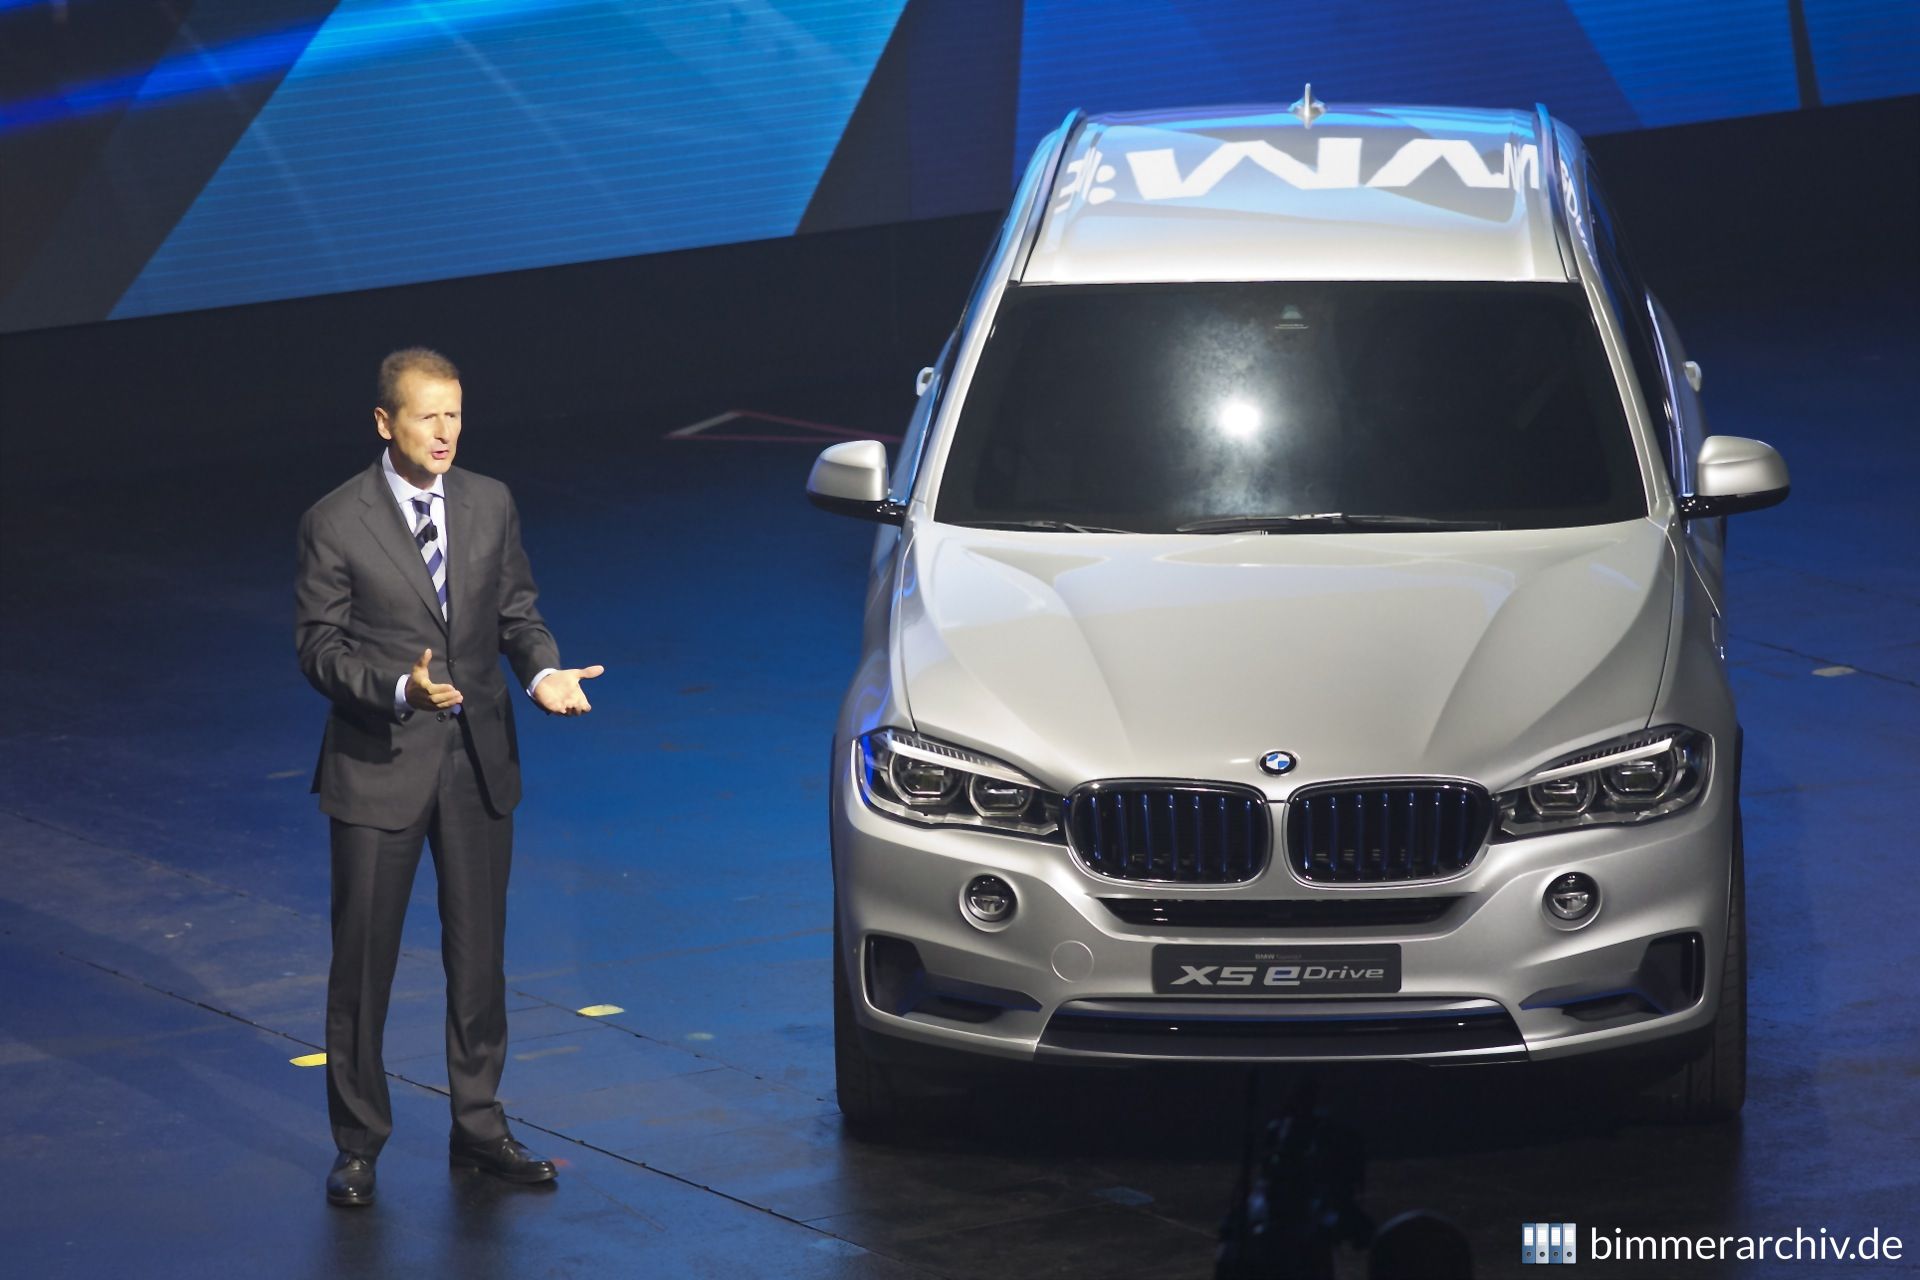 BMW Pressekonferenz - Herbert Diess und BMW Concept X5 eDrive